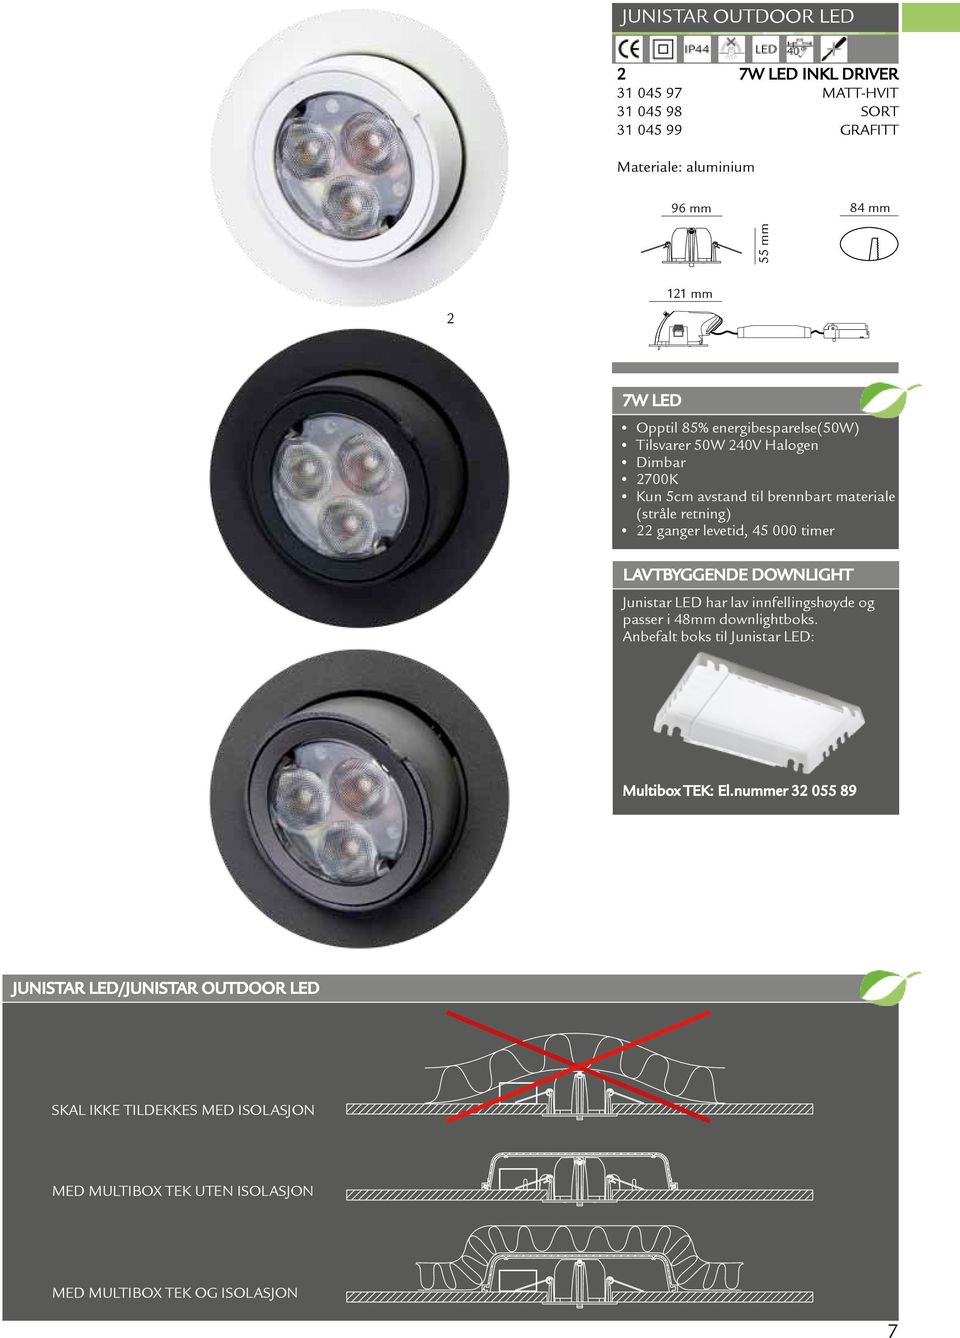 45 000 timer LavTbyggende downlight Junistar LED har lav innfellingshøyde og passer i 48mm downlightboks.